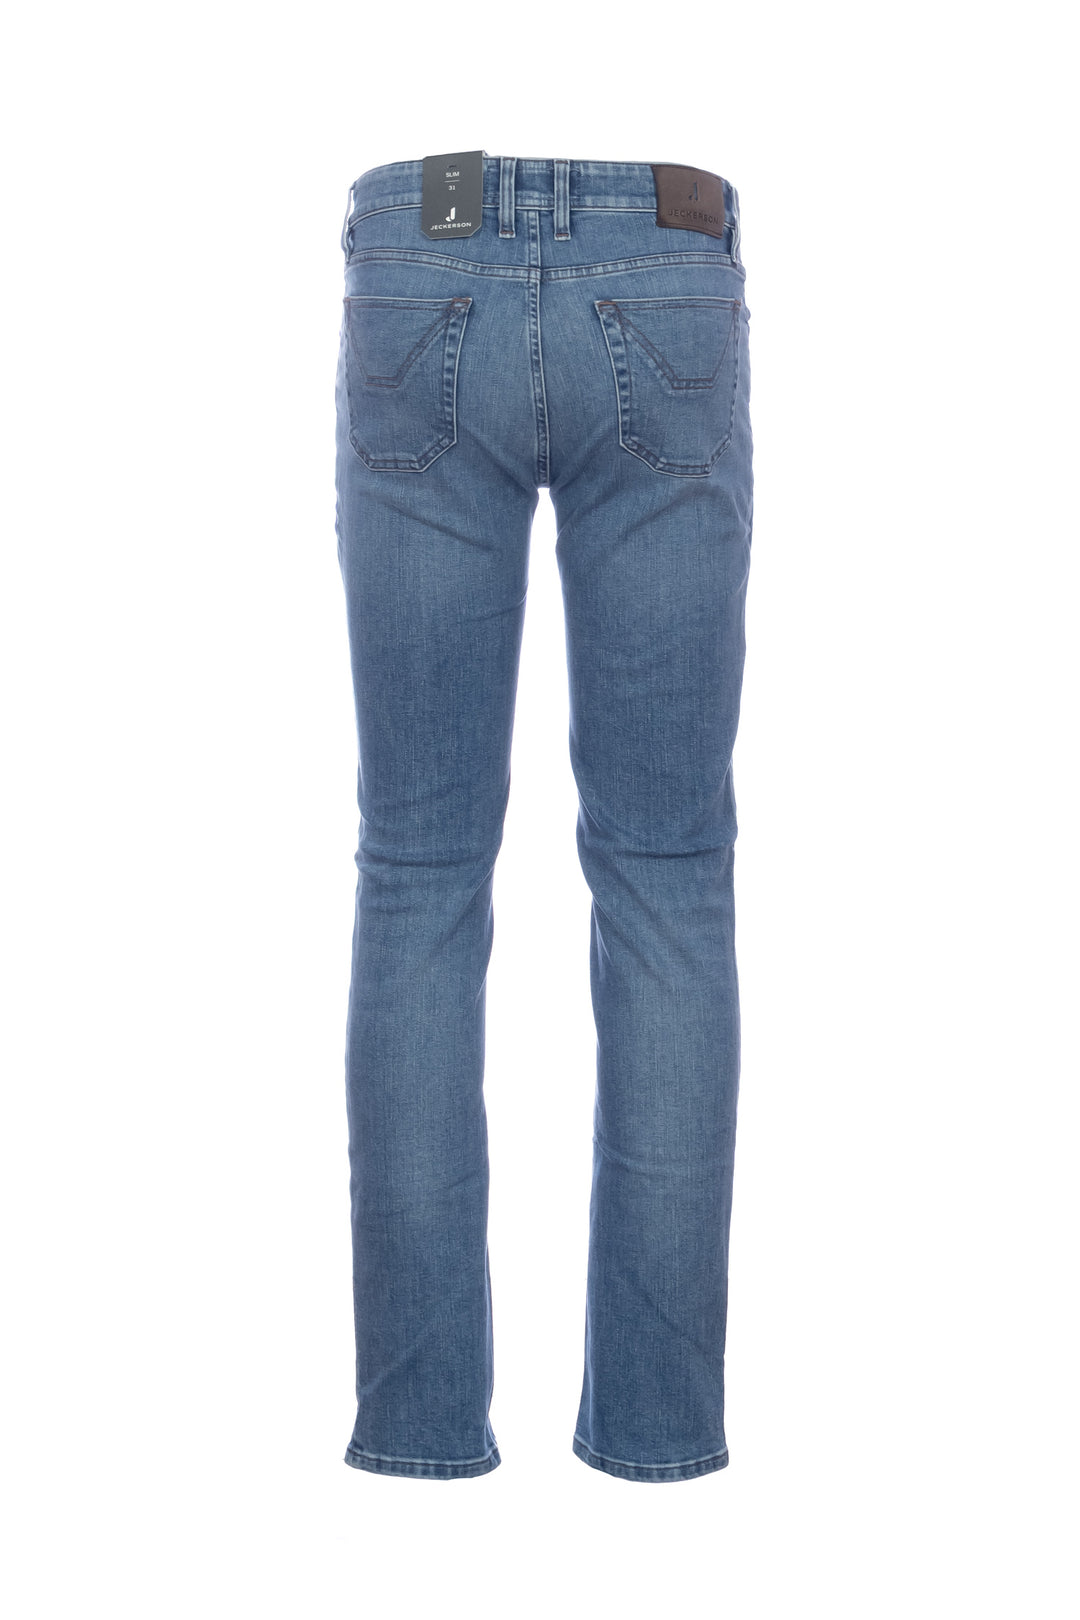 JECKERSON Jeans 5 tasche “JORDAN” in denim stretch lavaggio medio - Mancinelli 1954